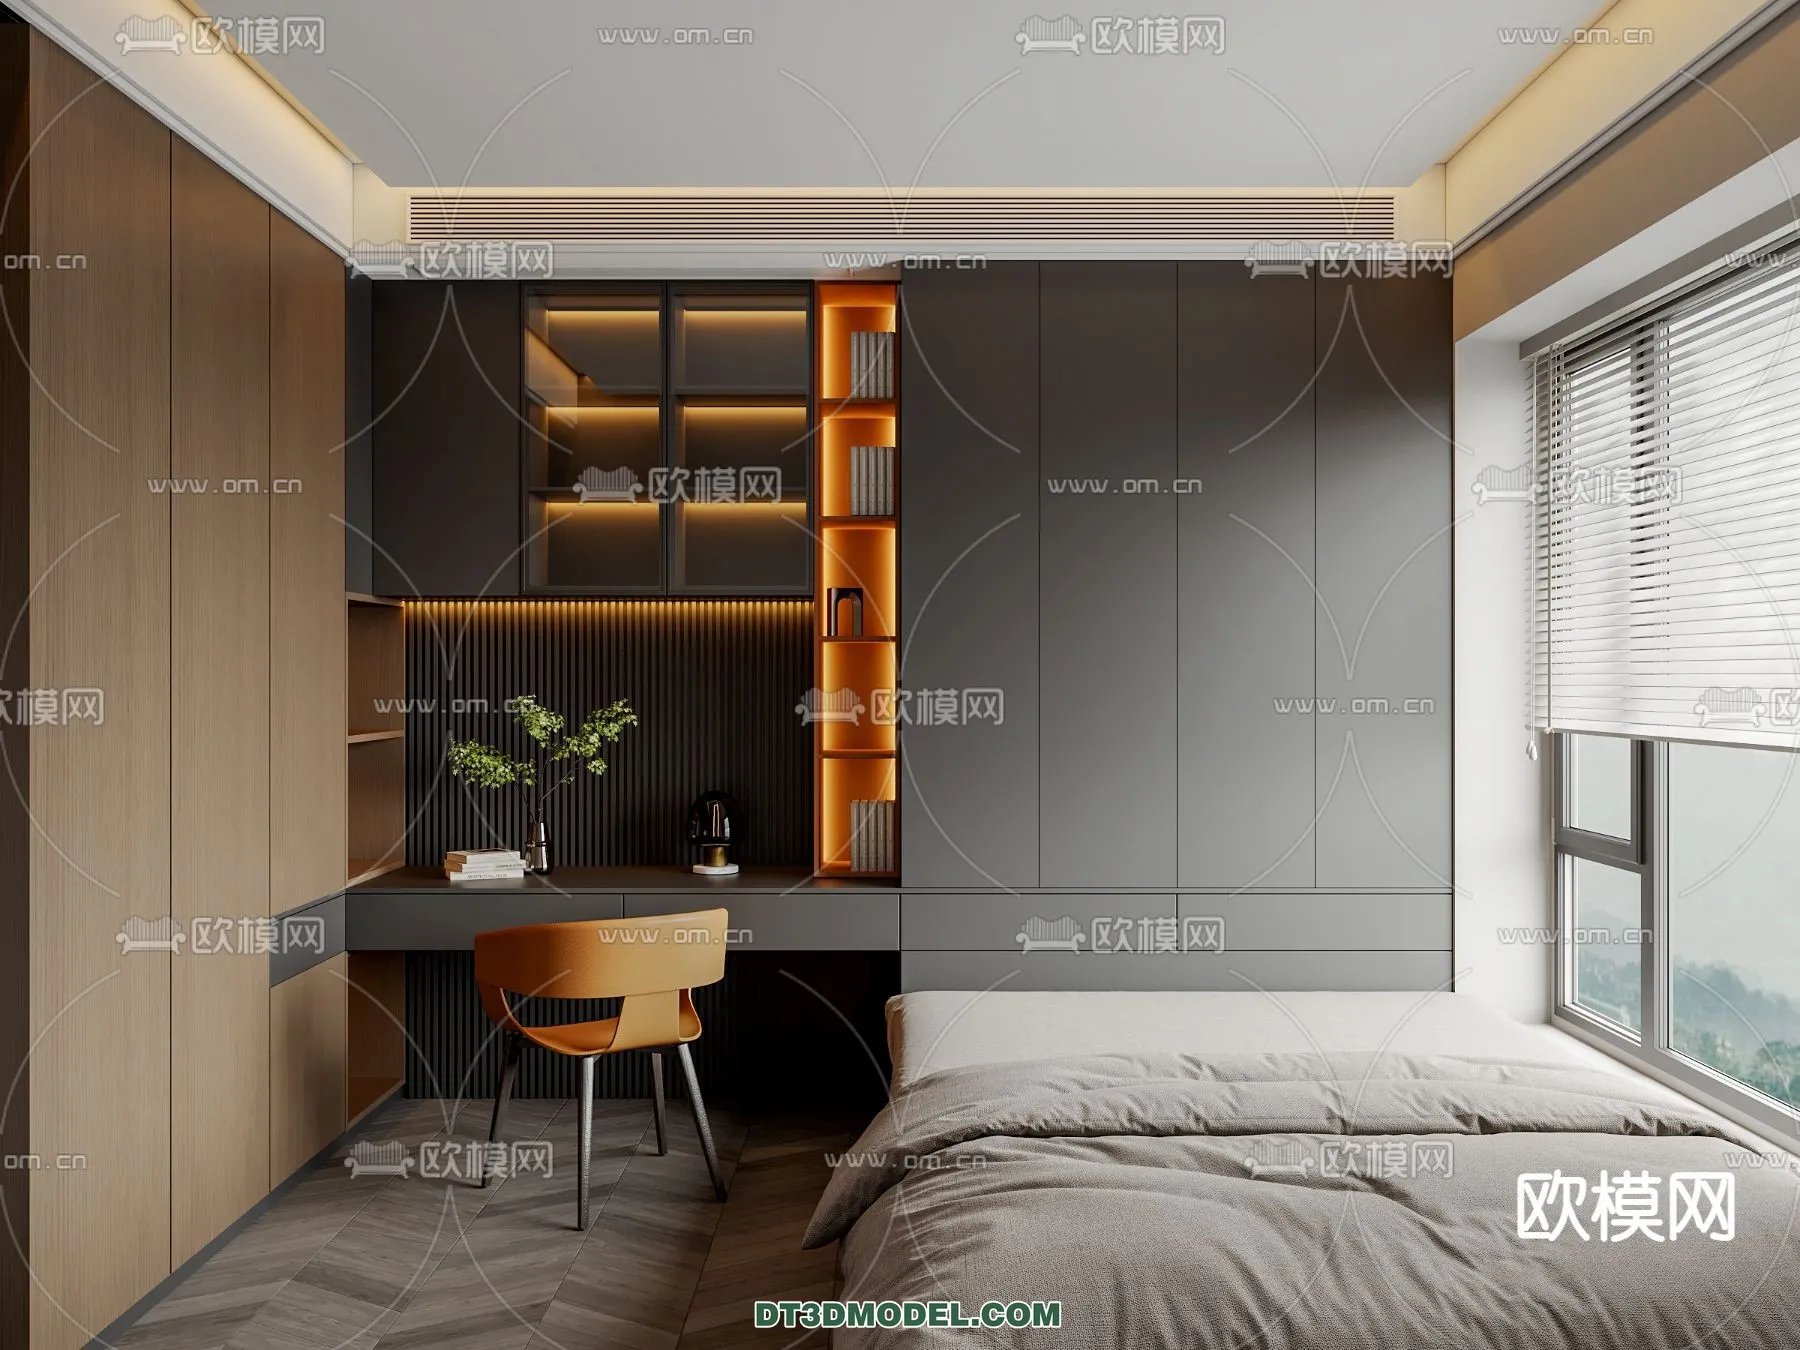 Tatami Bedroom – Japan Bedroom – 3D Scene – 007